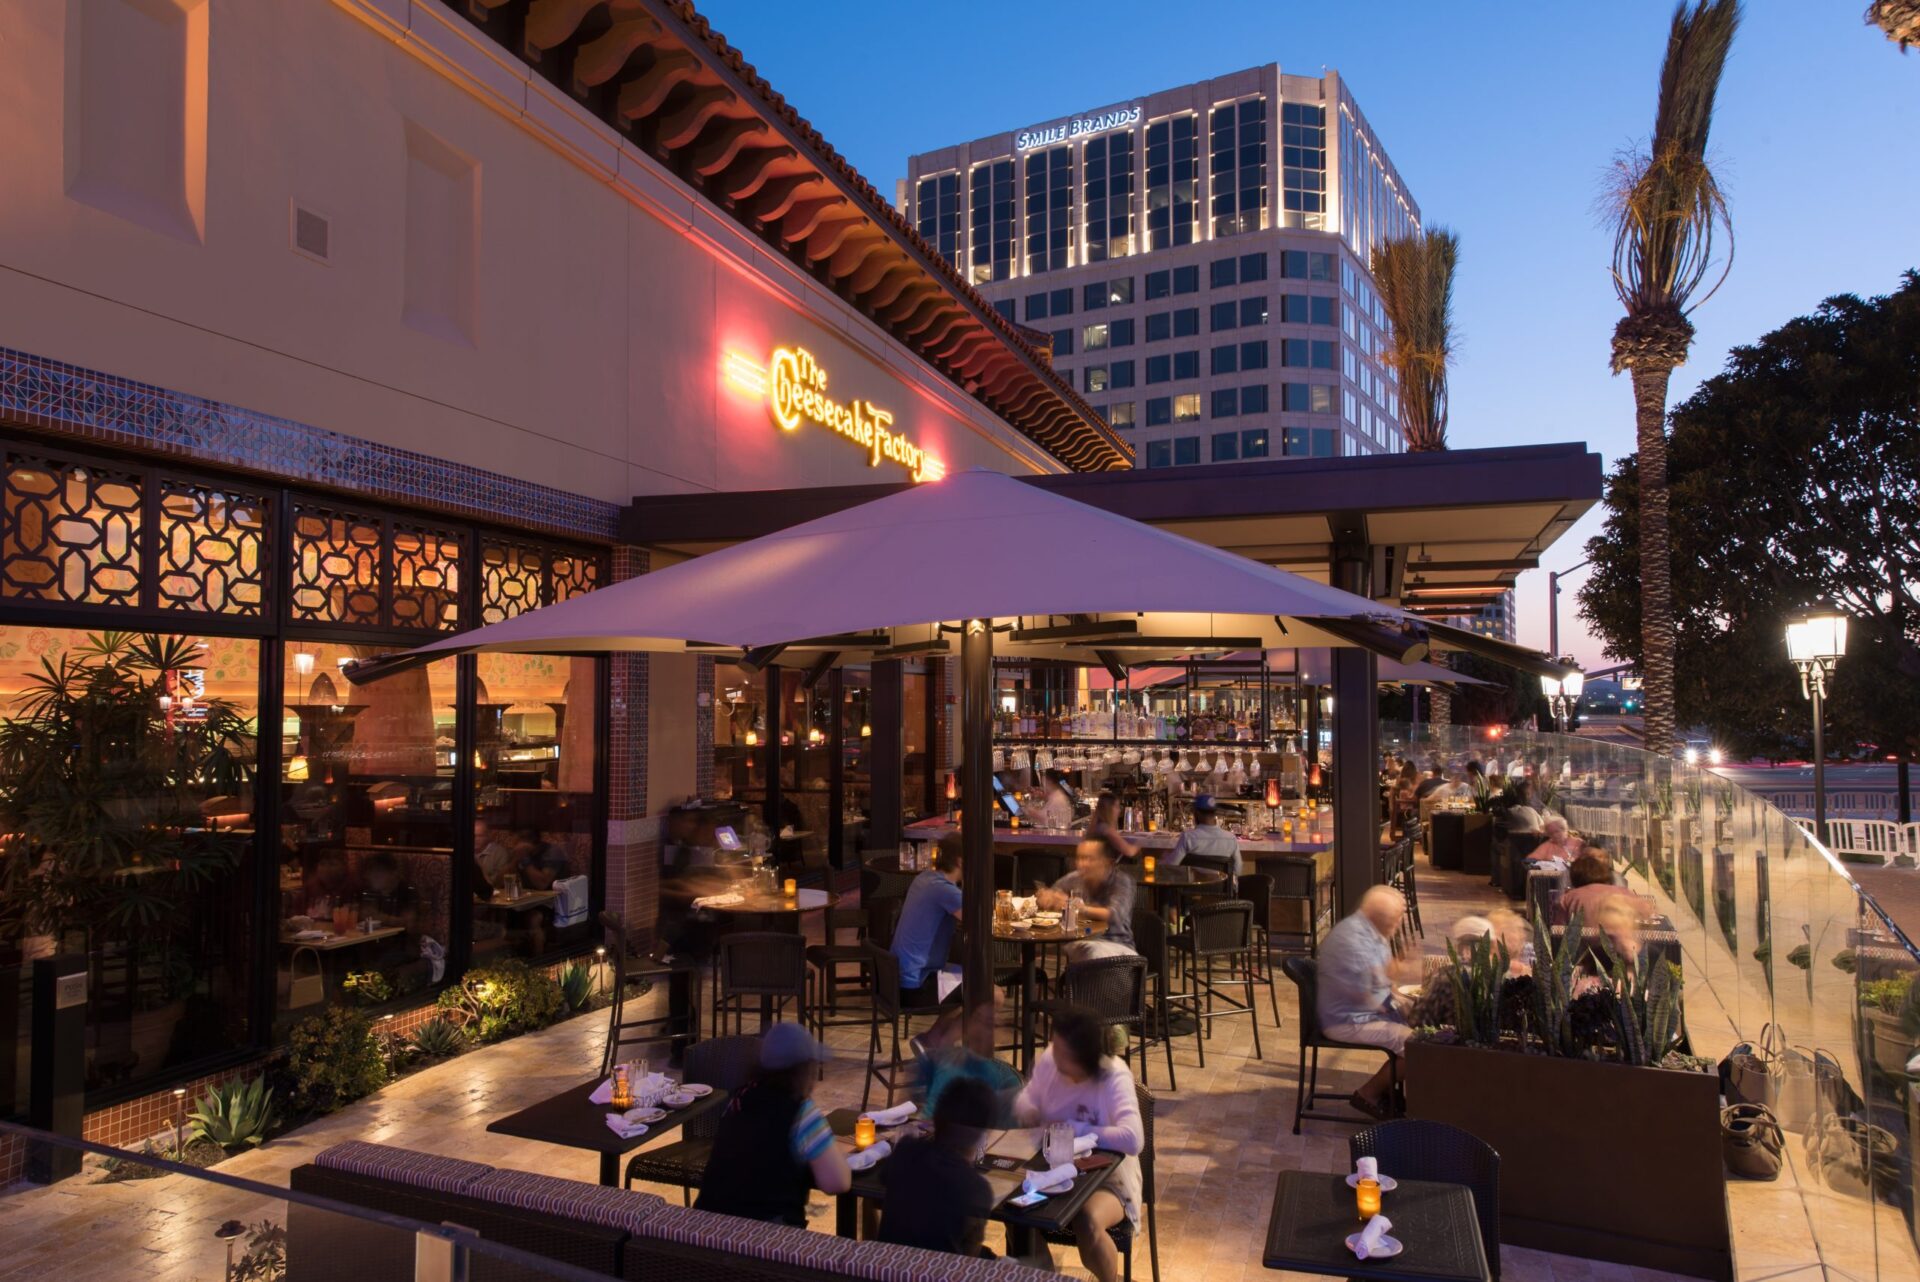 Best Restaurants with Outdoor Dining in Orange County